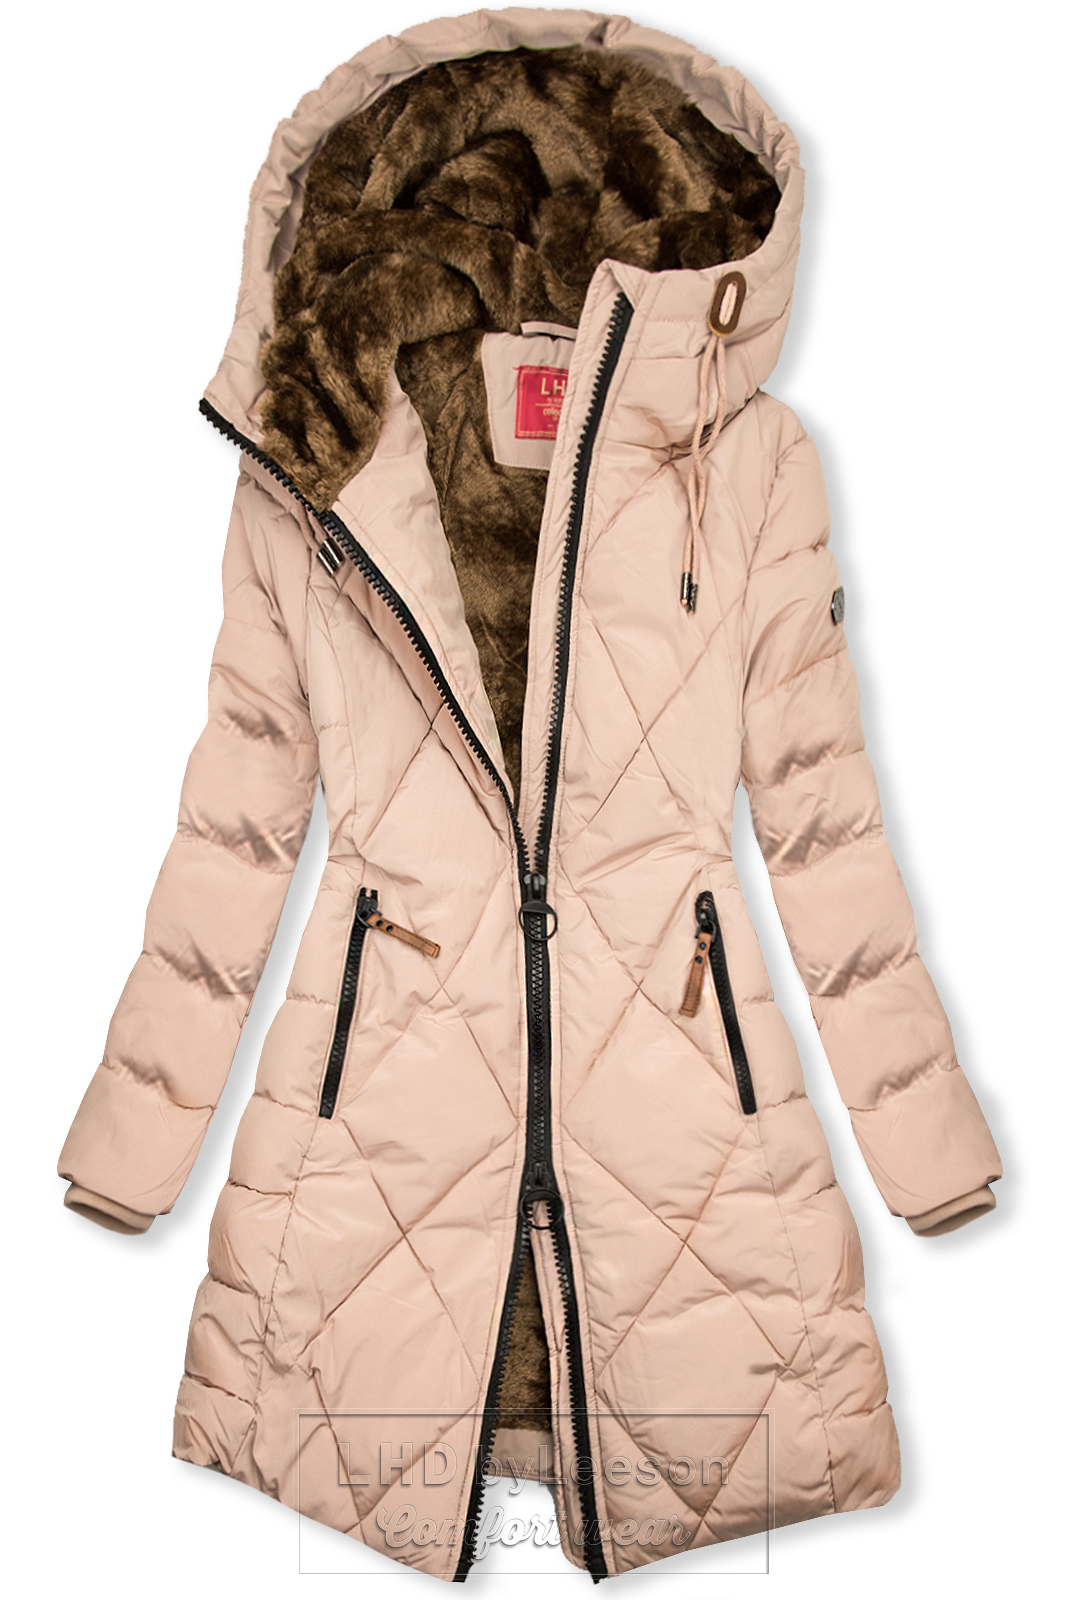 Pudrowo-różowa kurtka zimowa o pikowanym wyglądzie